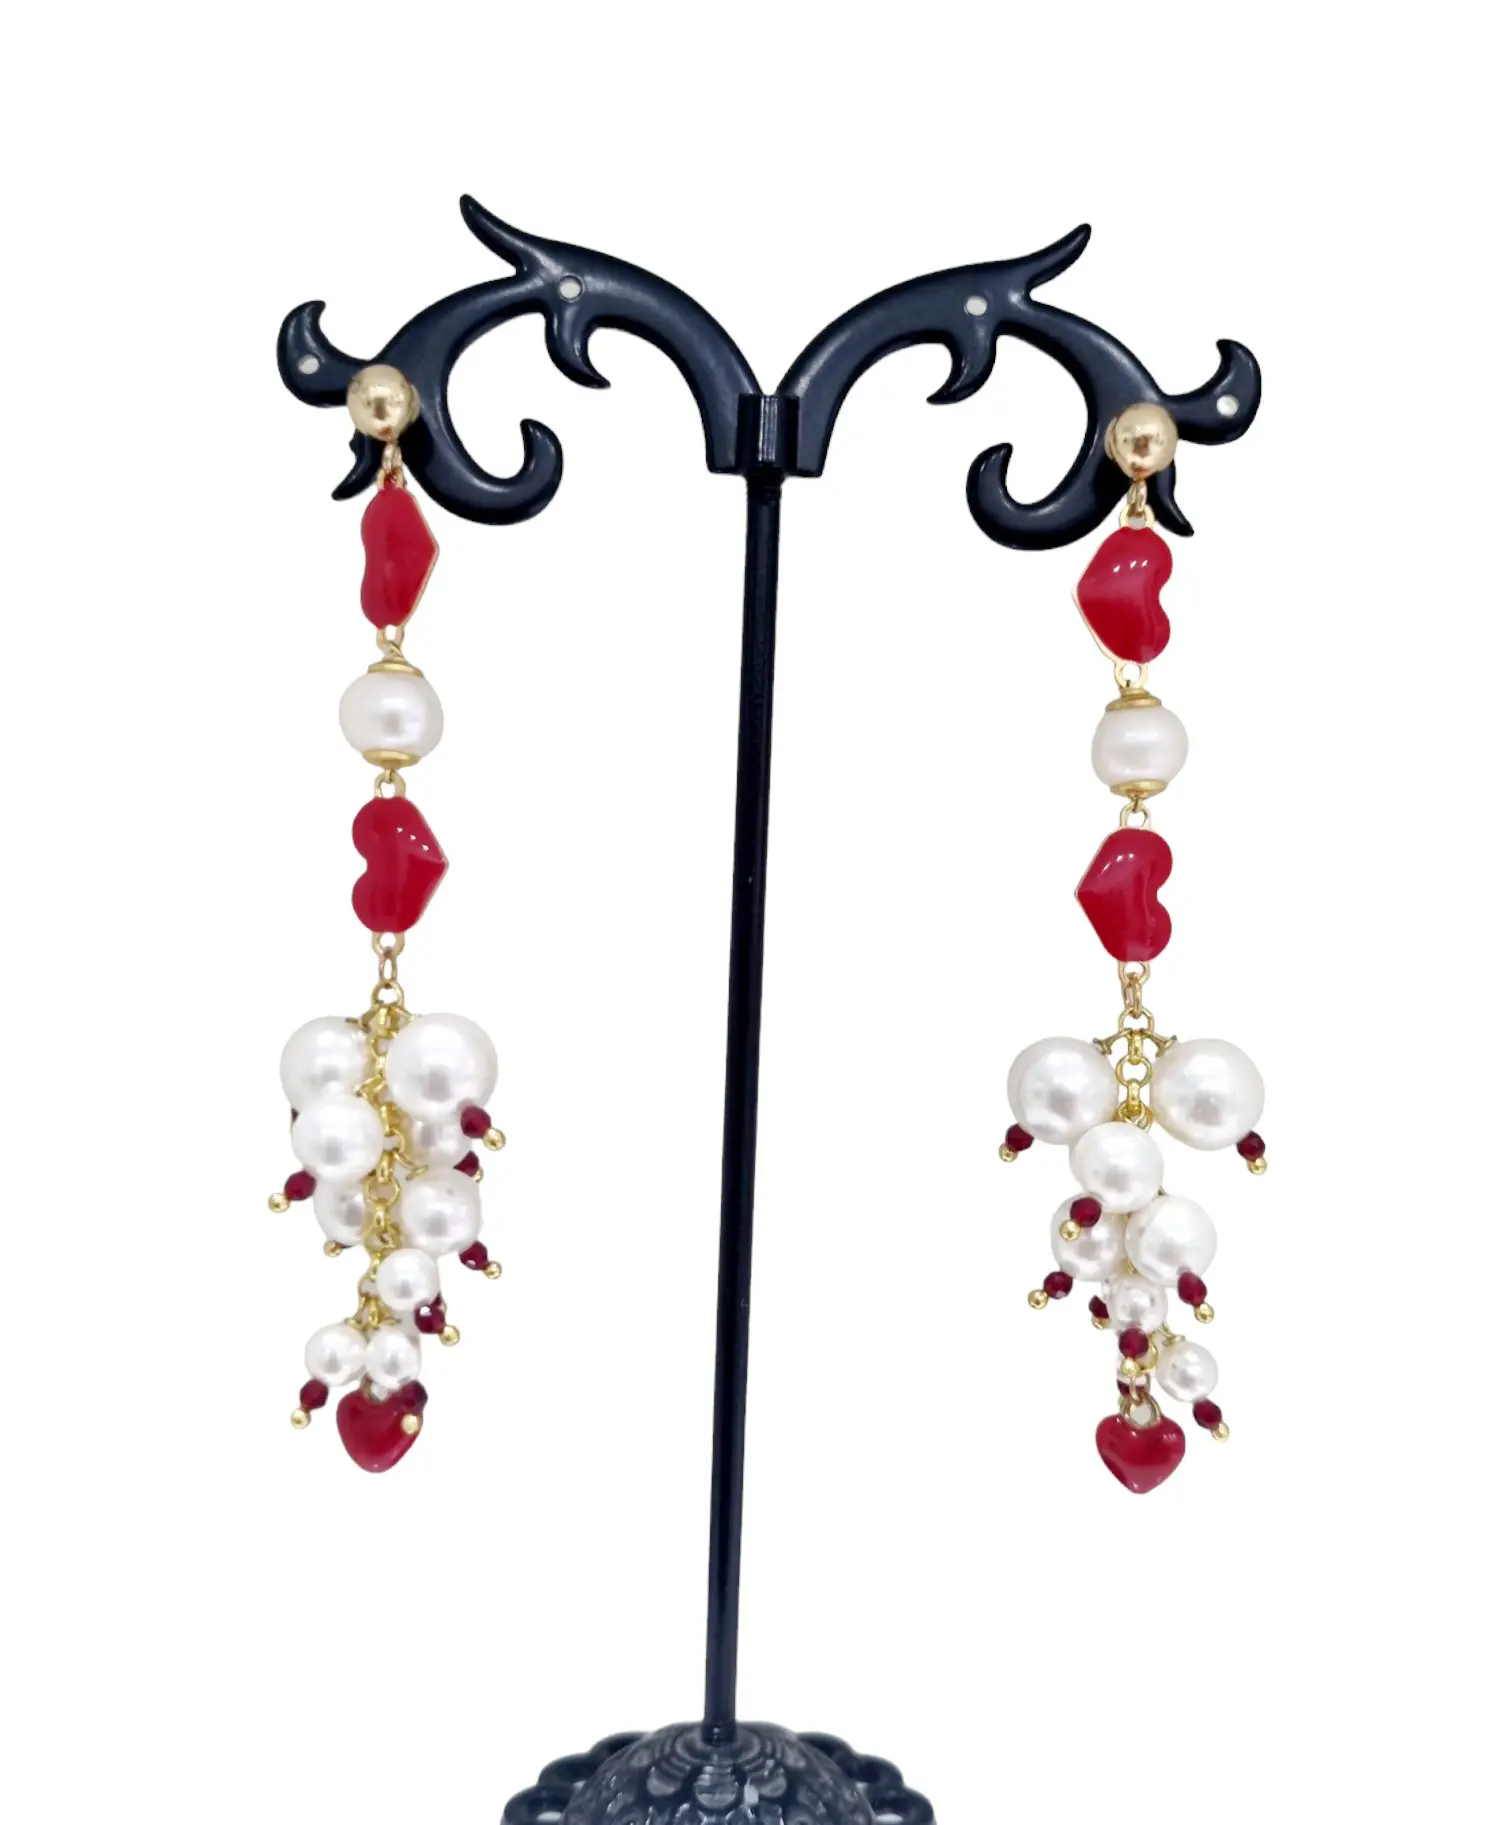 Boucles d'oreilles Love composées d'une cascade de cœurs rouges émaillés, de cristaux et de perles de Majorque. Longueur 7,5 cmPoids 6,4gr